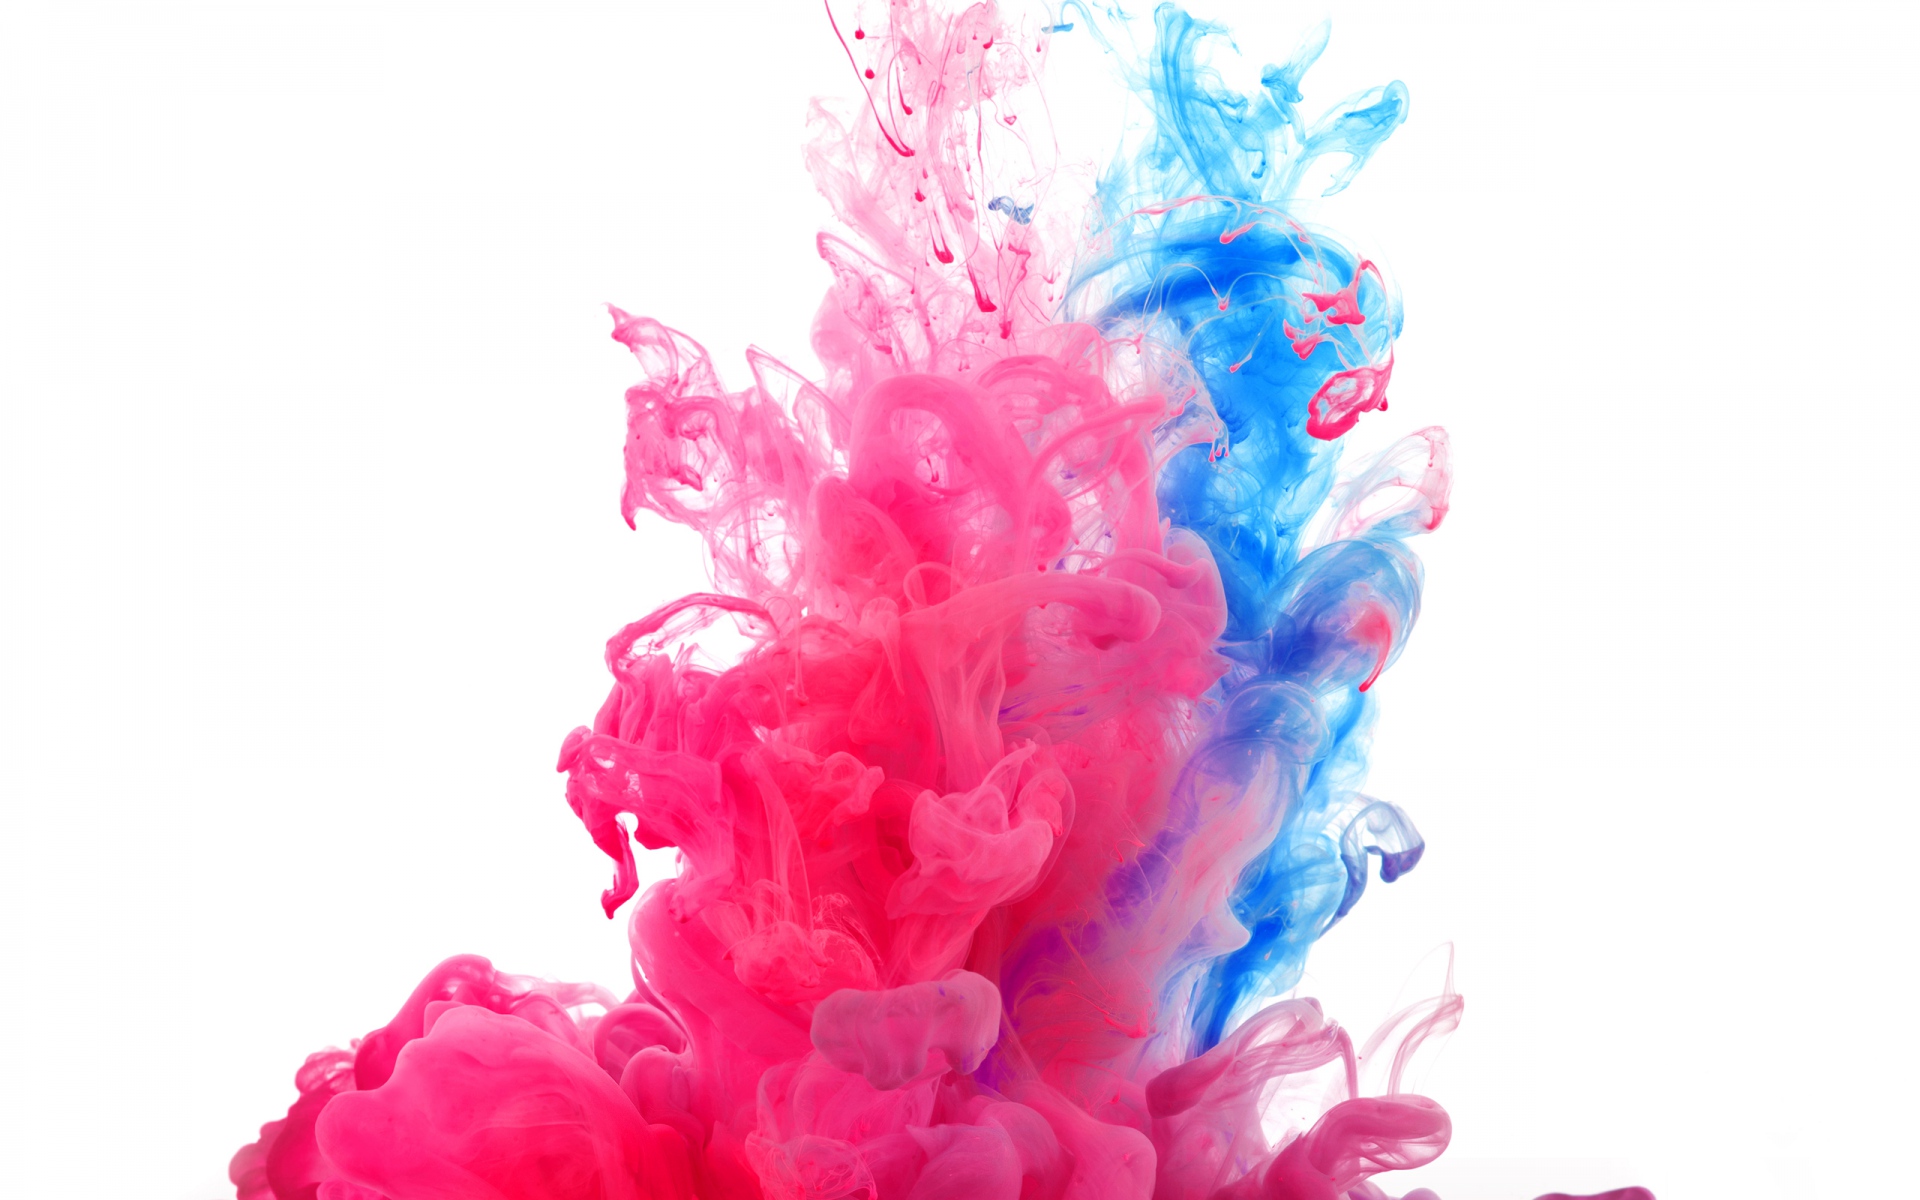 Pink & Blue Smoke Rising wallpapers | Pink & Blue Smoke Rising ...